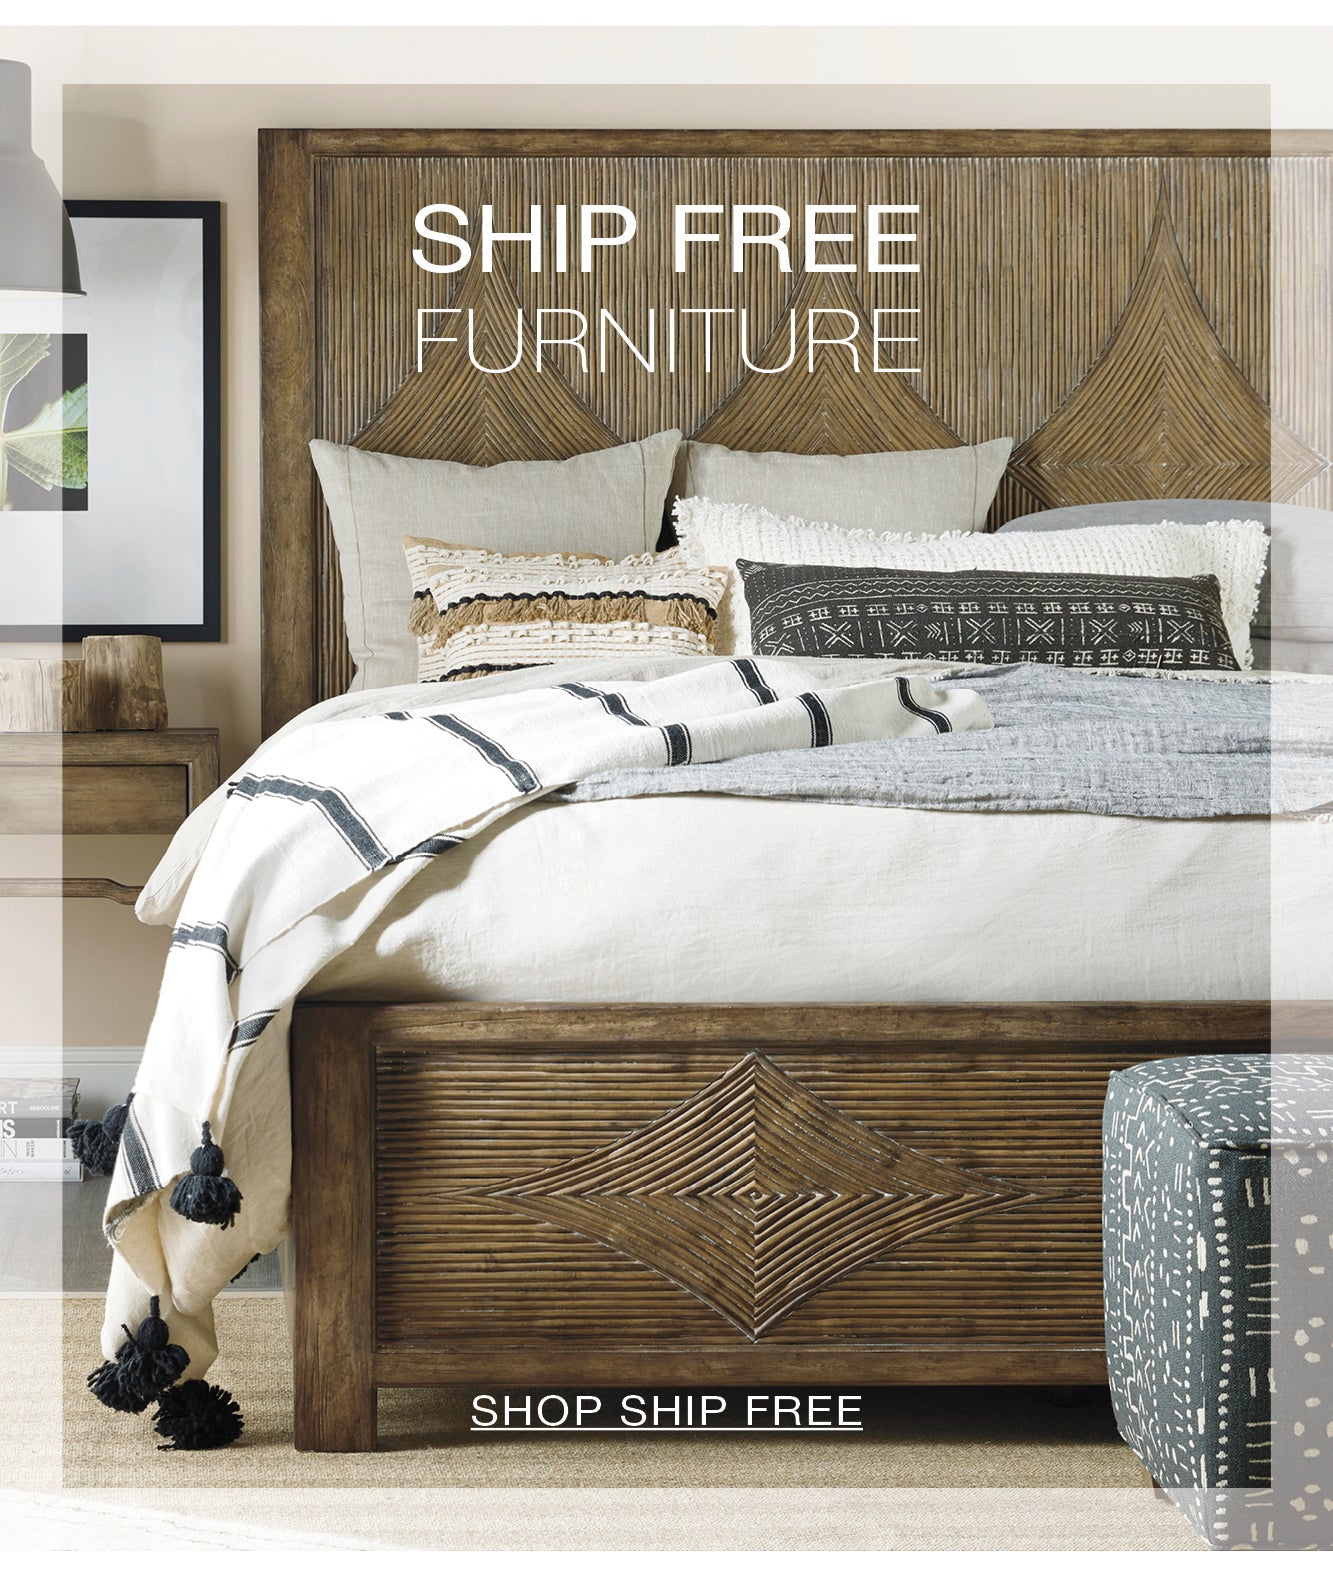 SHIP FREE Furniture